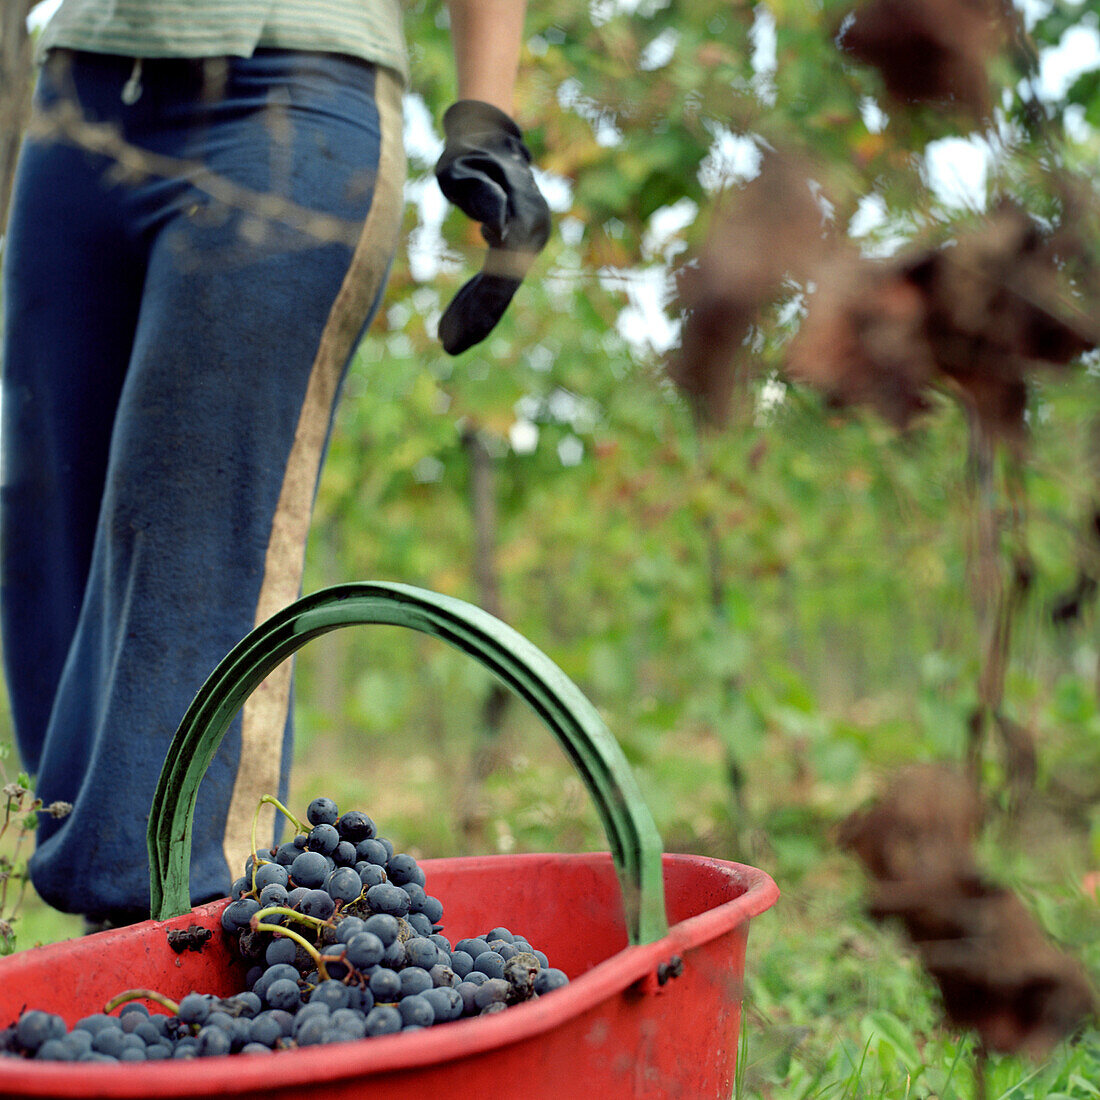 Traubenernte in der Toskana, Italien, roter Eimer, dunkle Trauben, Weinreben, Weinhandel, ernten, trägt Handschuhe, Wein, Person